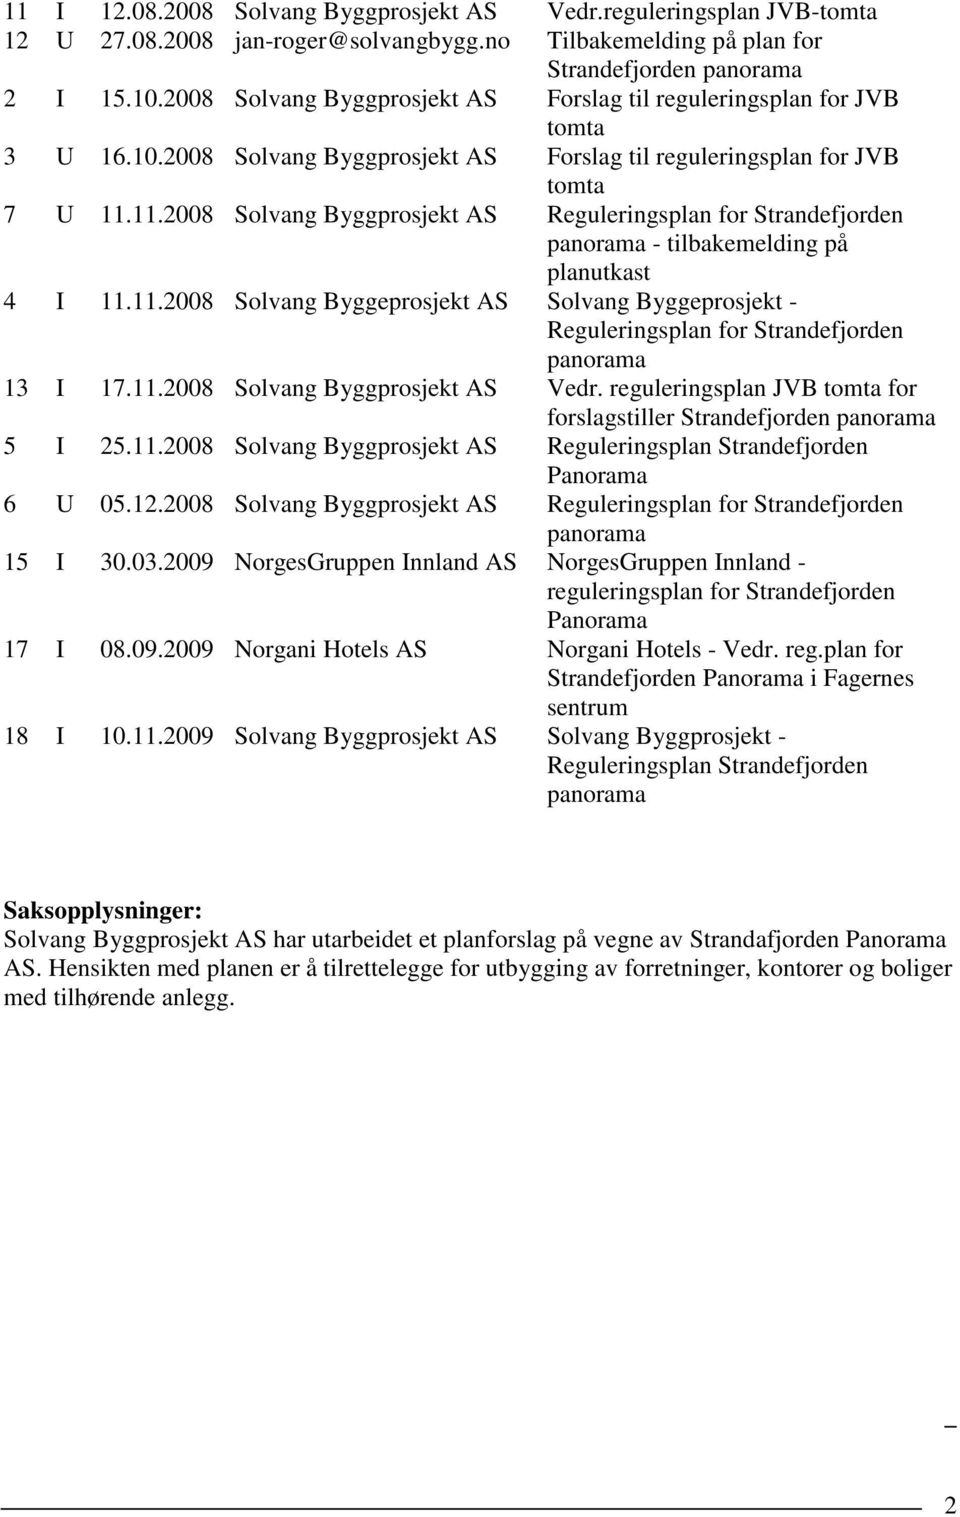 11.2008 Solvang Byggprosjekt AS Reguleringsplan for Strandefjorden panorama - tilbakemelding på planutkast 4 I 11.11.2008 Solvang Byggeprosjekt AS Solvang Byggeprosjekt - Reguleringsplan for Strandefjorden panorama 13 I 17.